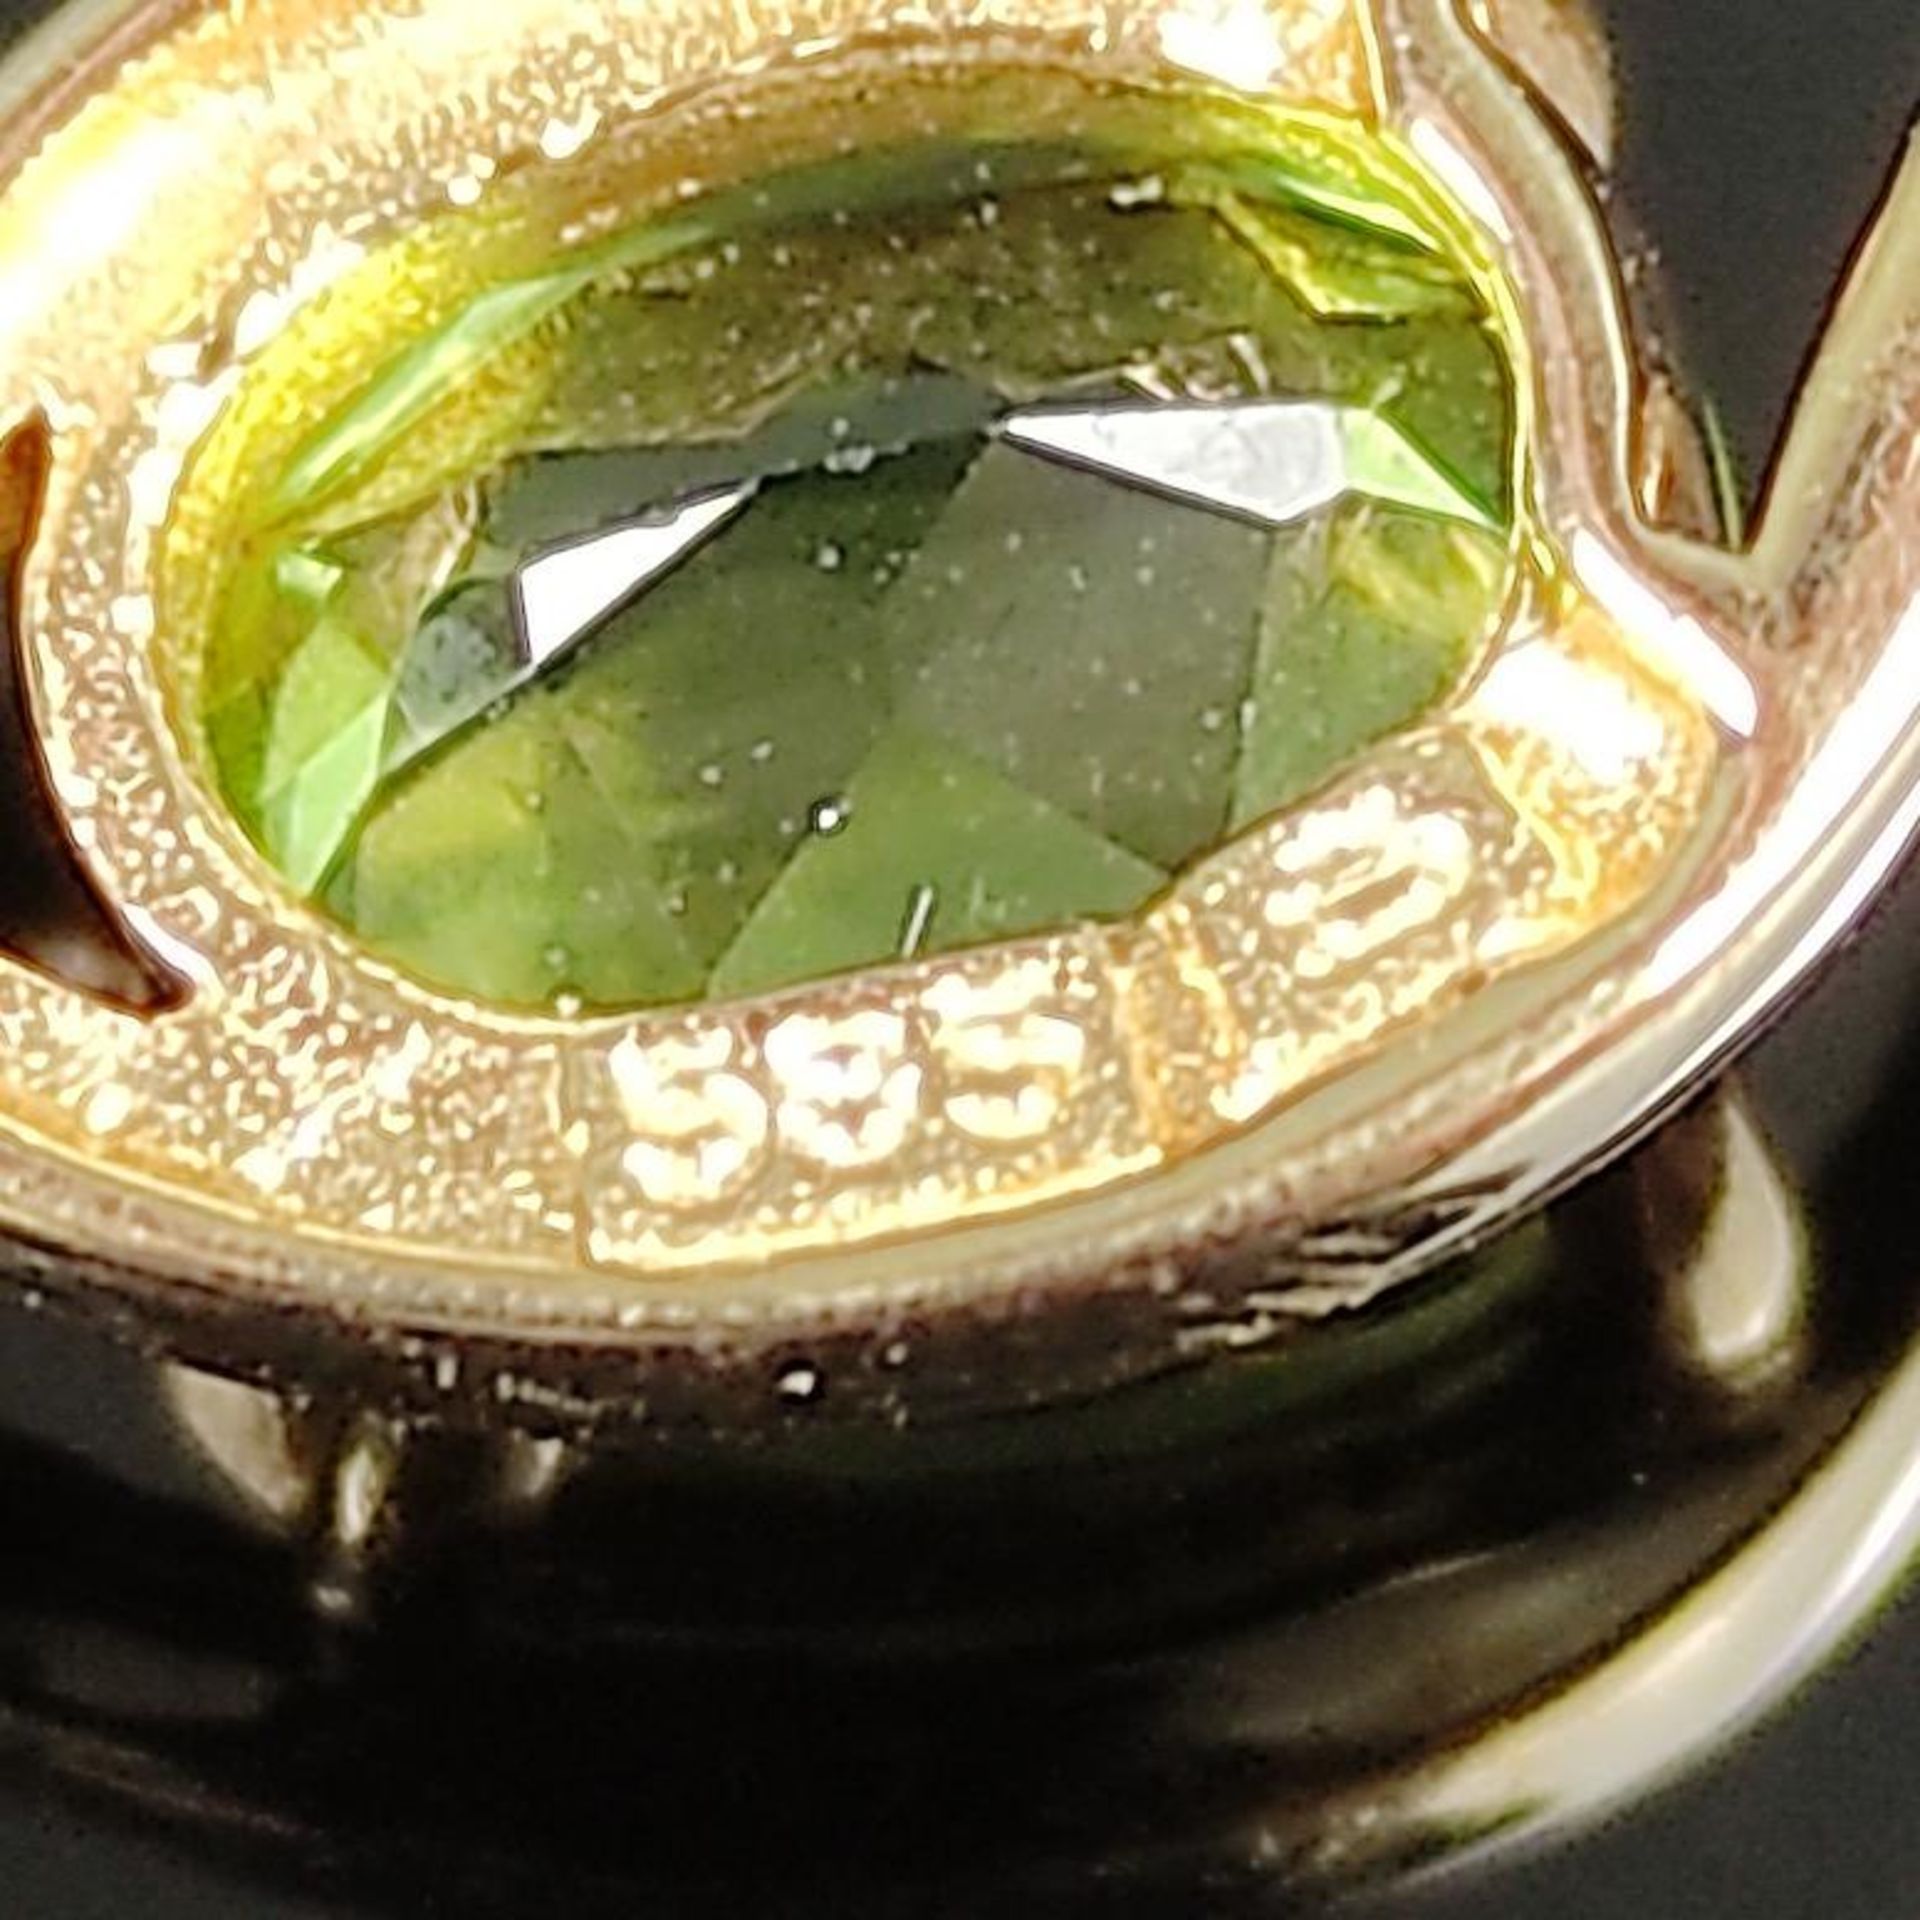 Peridot-Gold-Collier, 585/14K Gelbgold, Gesamtgewicht 4,2g, Anhänger besetzt mit oval facettierten, - Bild 2 aus 2